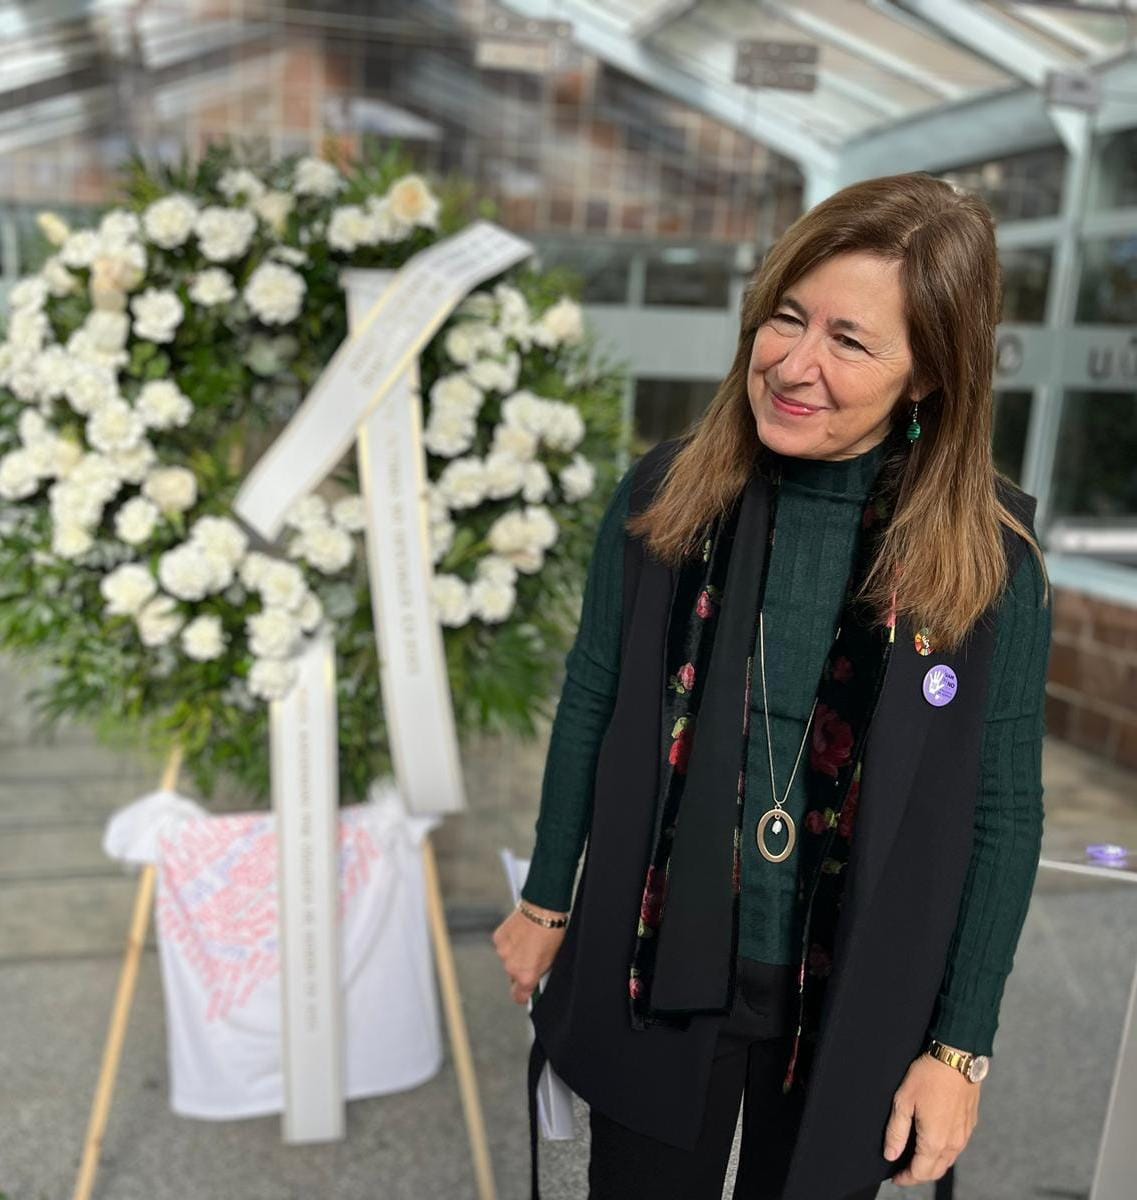 Imagen de la rectora junto a la corona de rosas y claves blancos en solidaridad con las víctimas y sus familias.